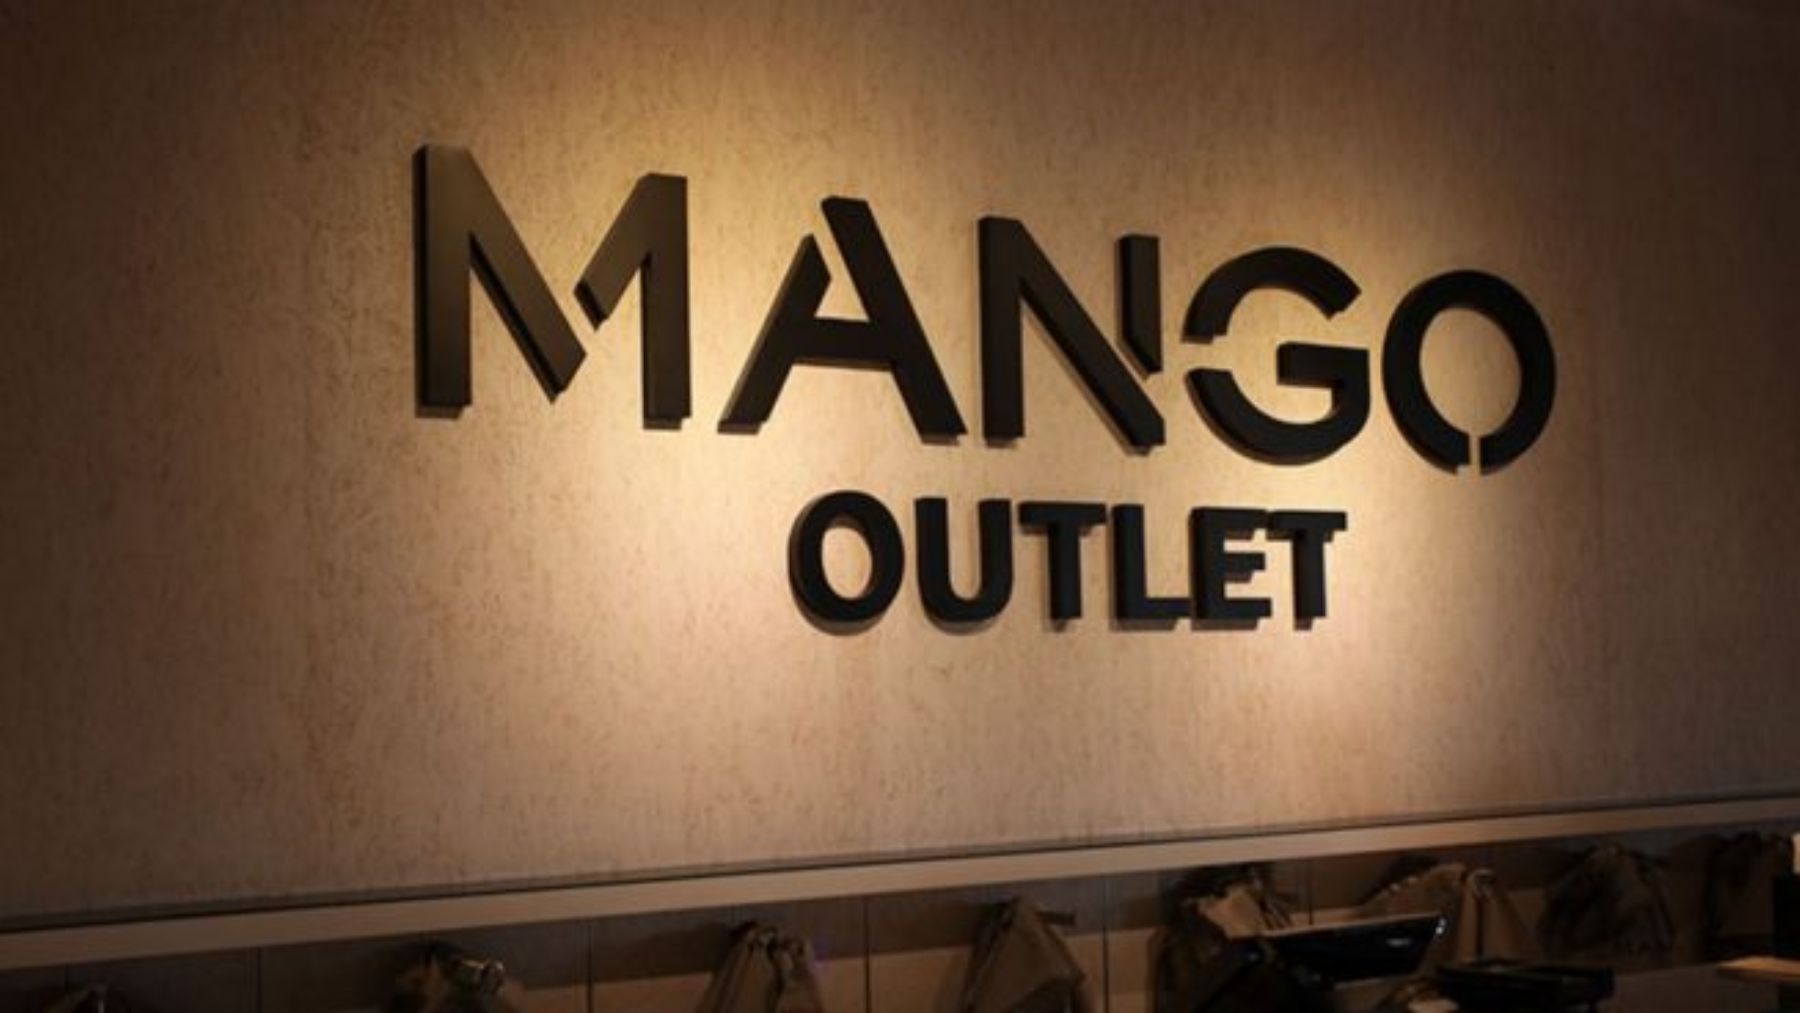 Descubre los mejores botines de Mango Outlet esta temporada